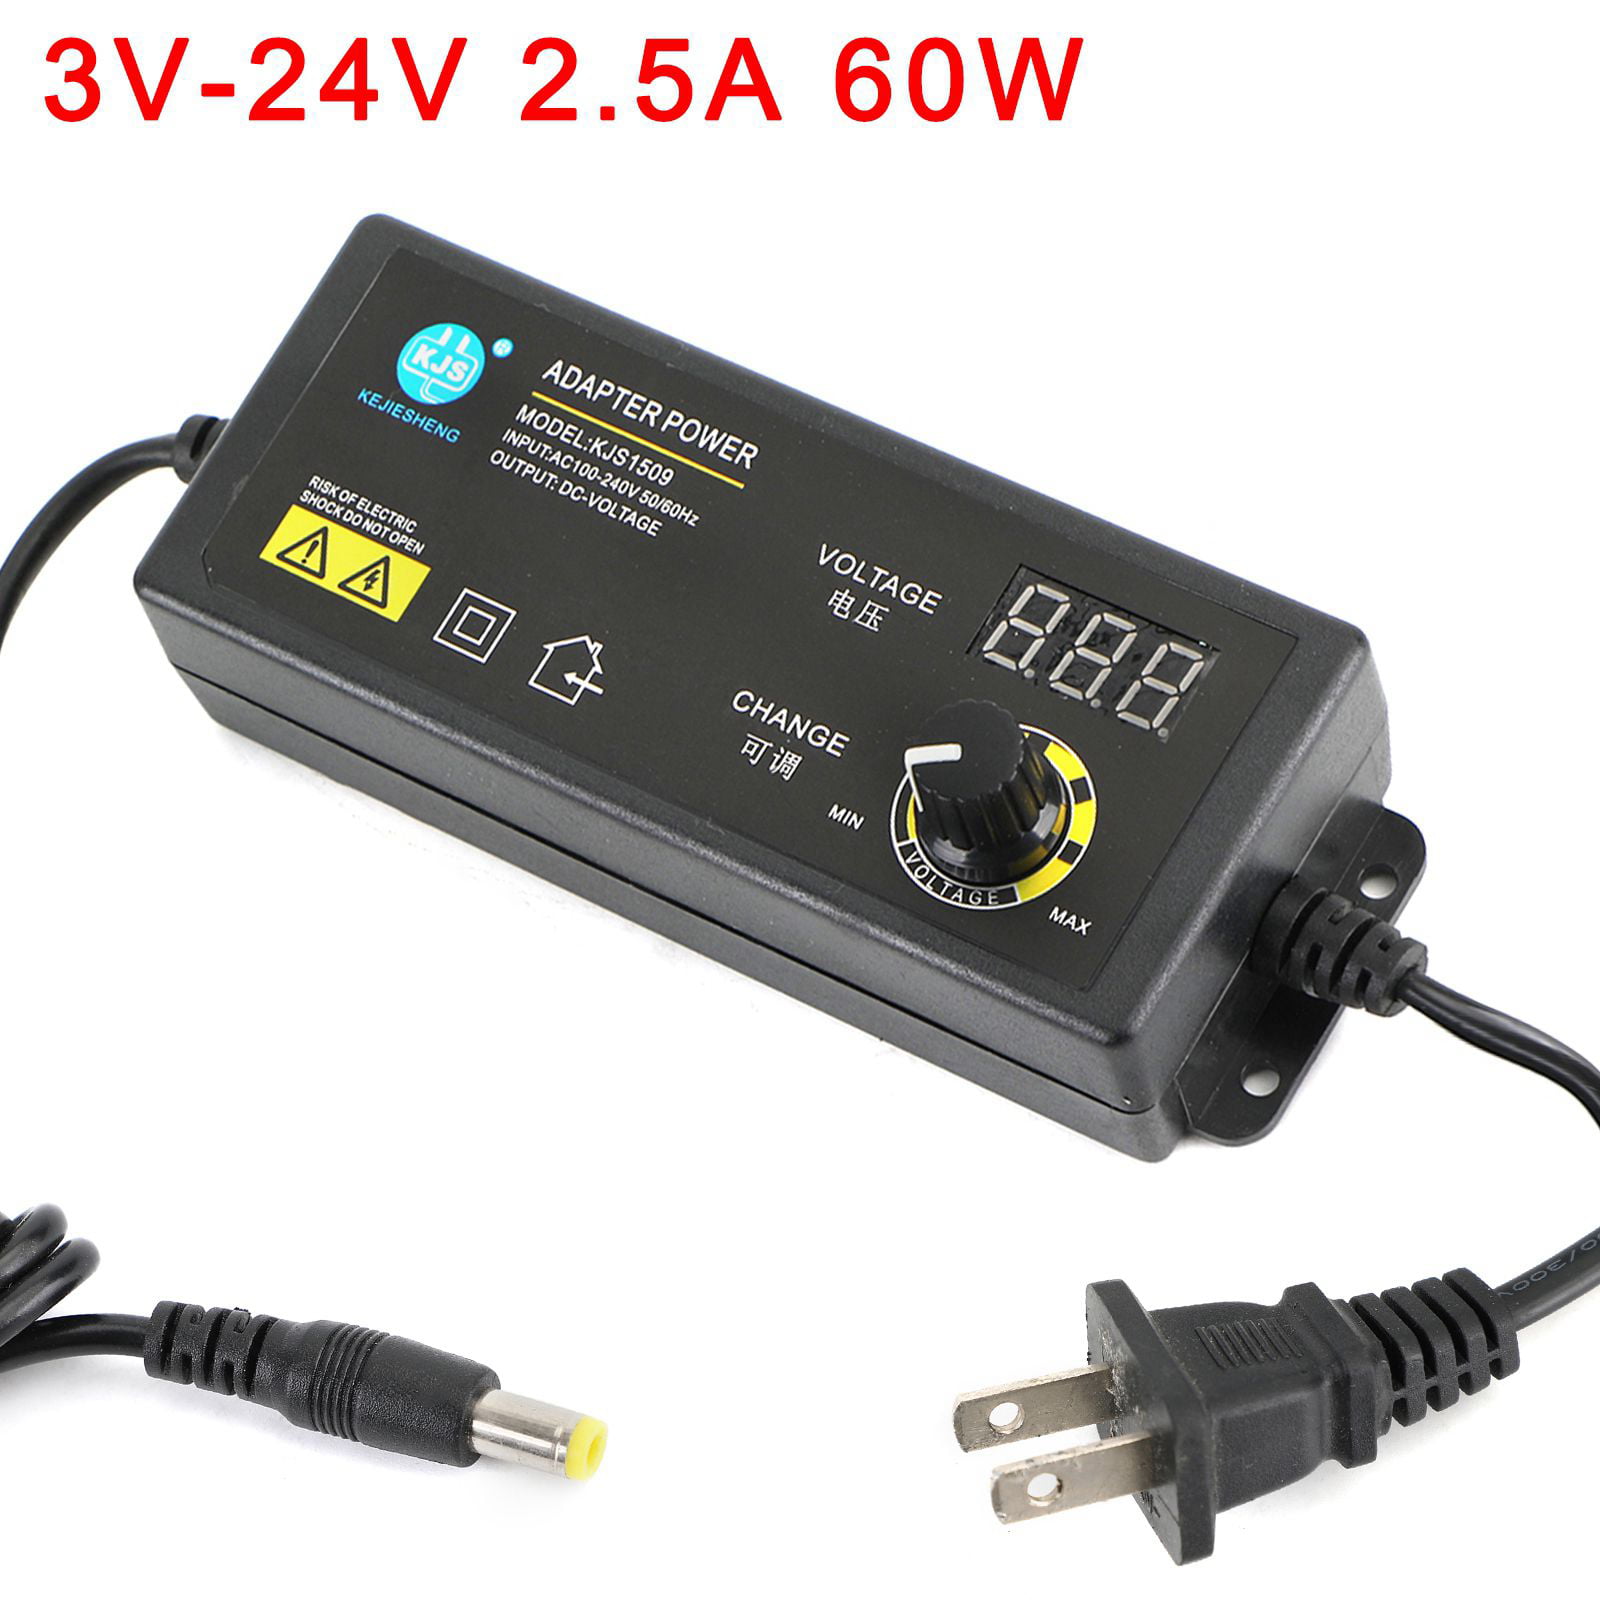 3V-24V Adjustable Voltage 2.5A 60W Power Supply Adapter Charger Transformer﹣uk 